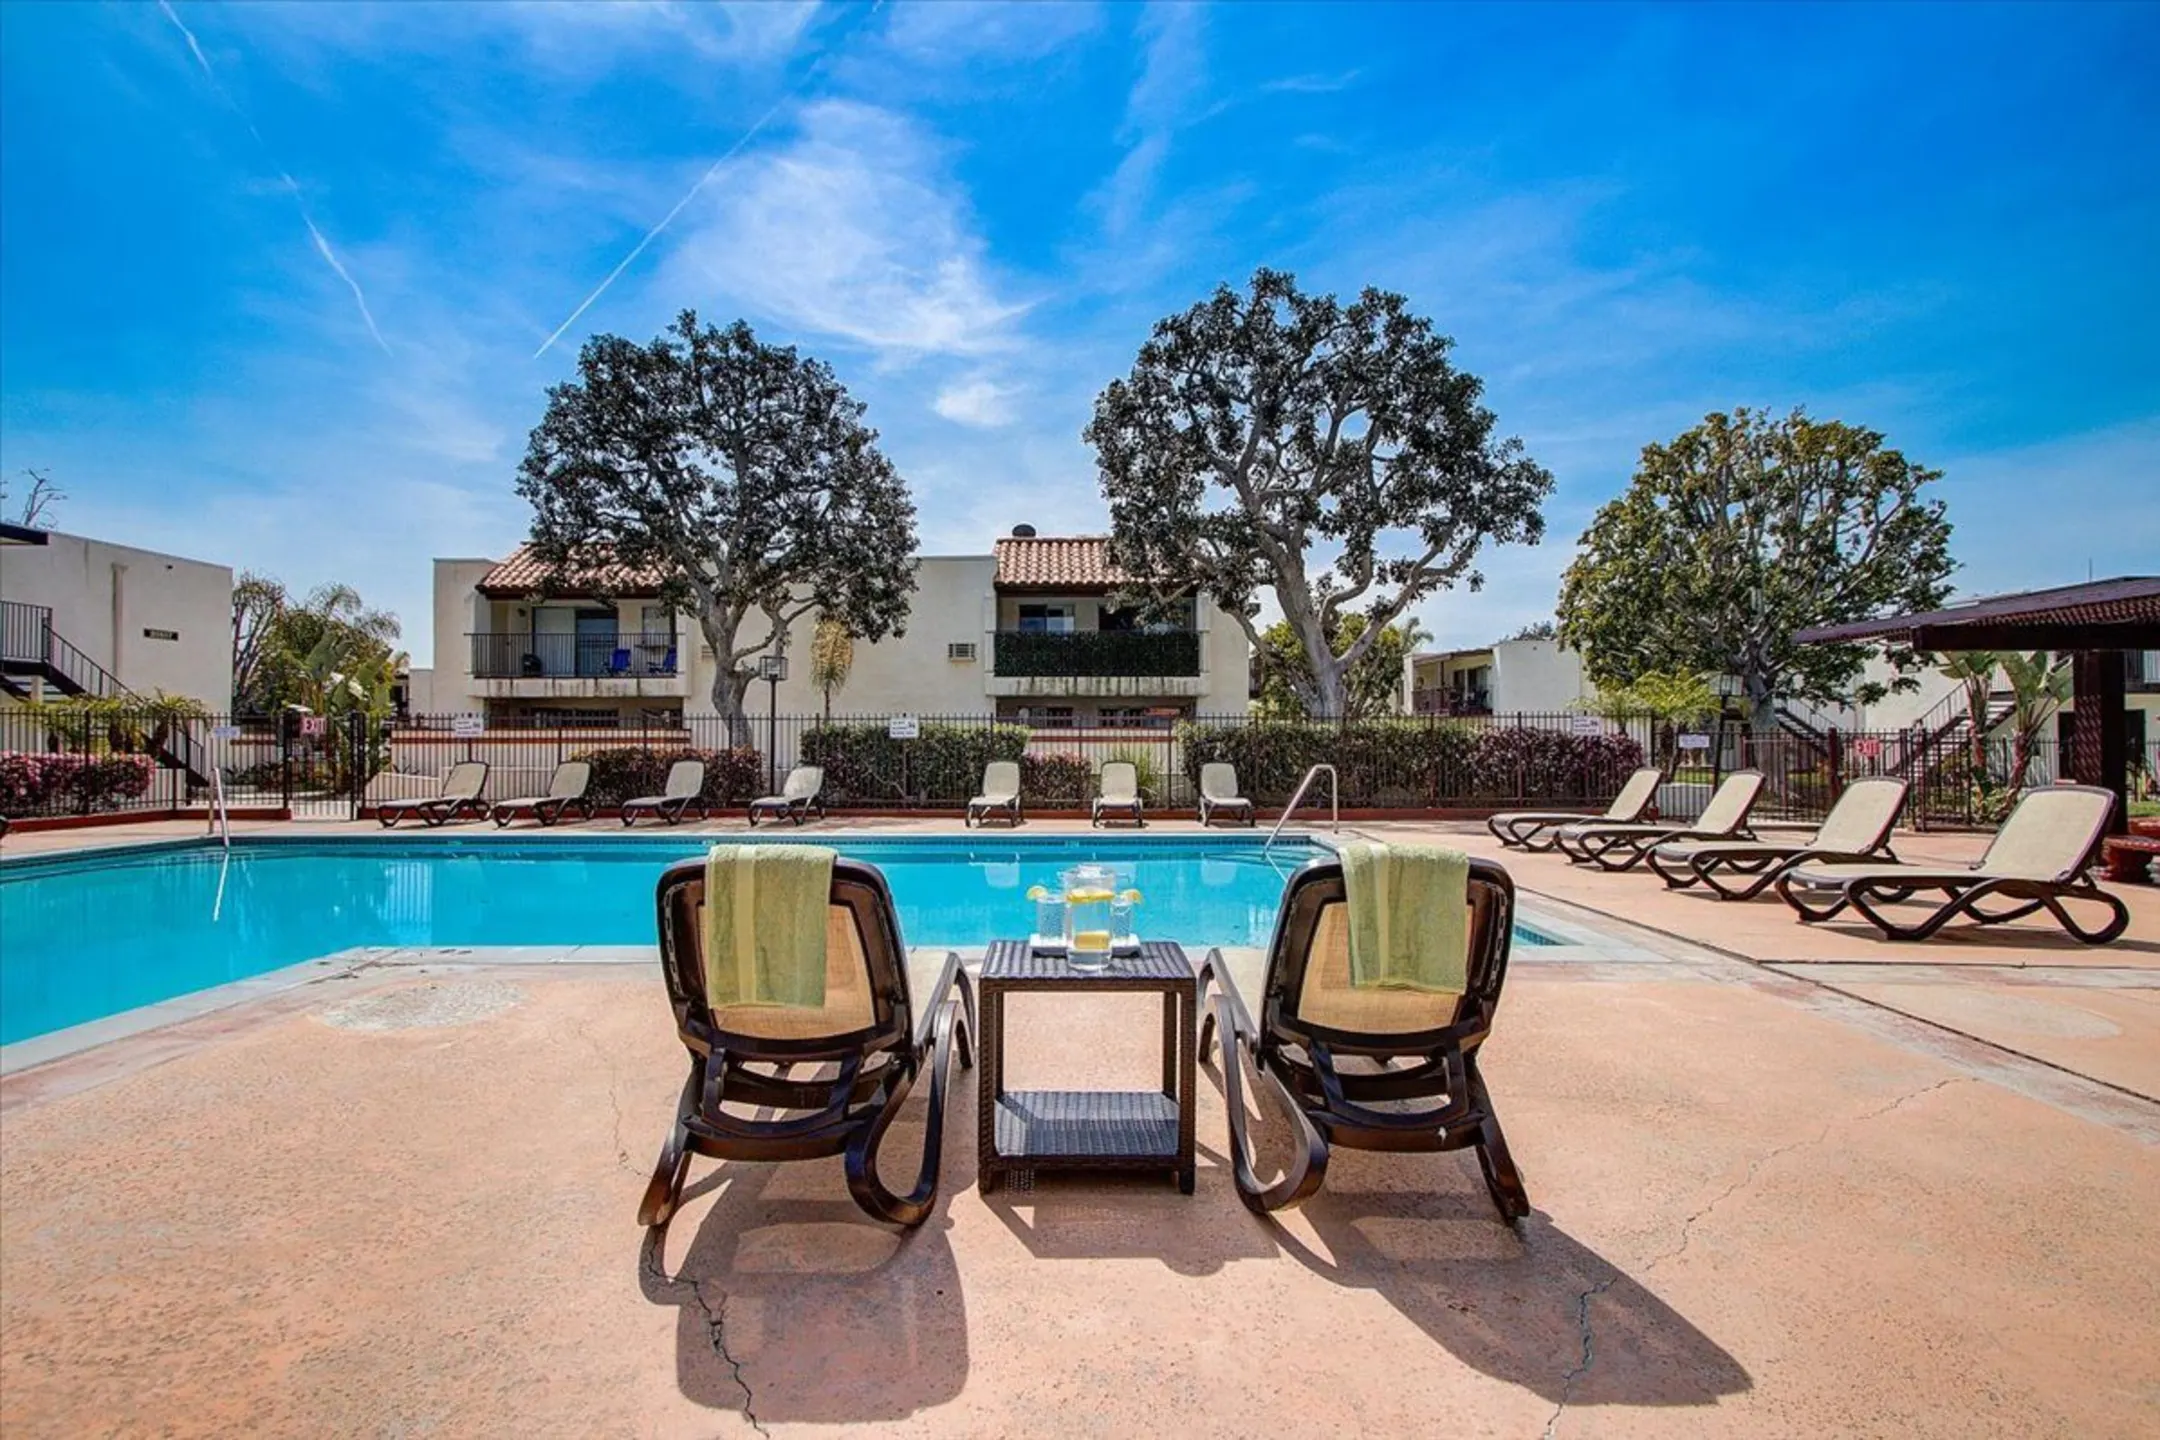 Pool - El Cordova Apartments - Carson, CA